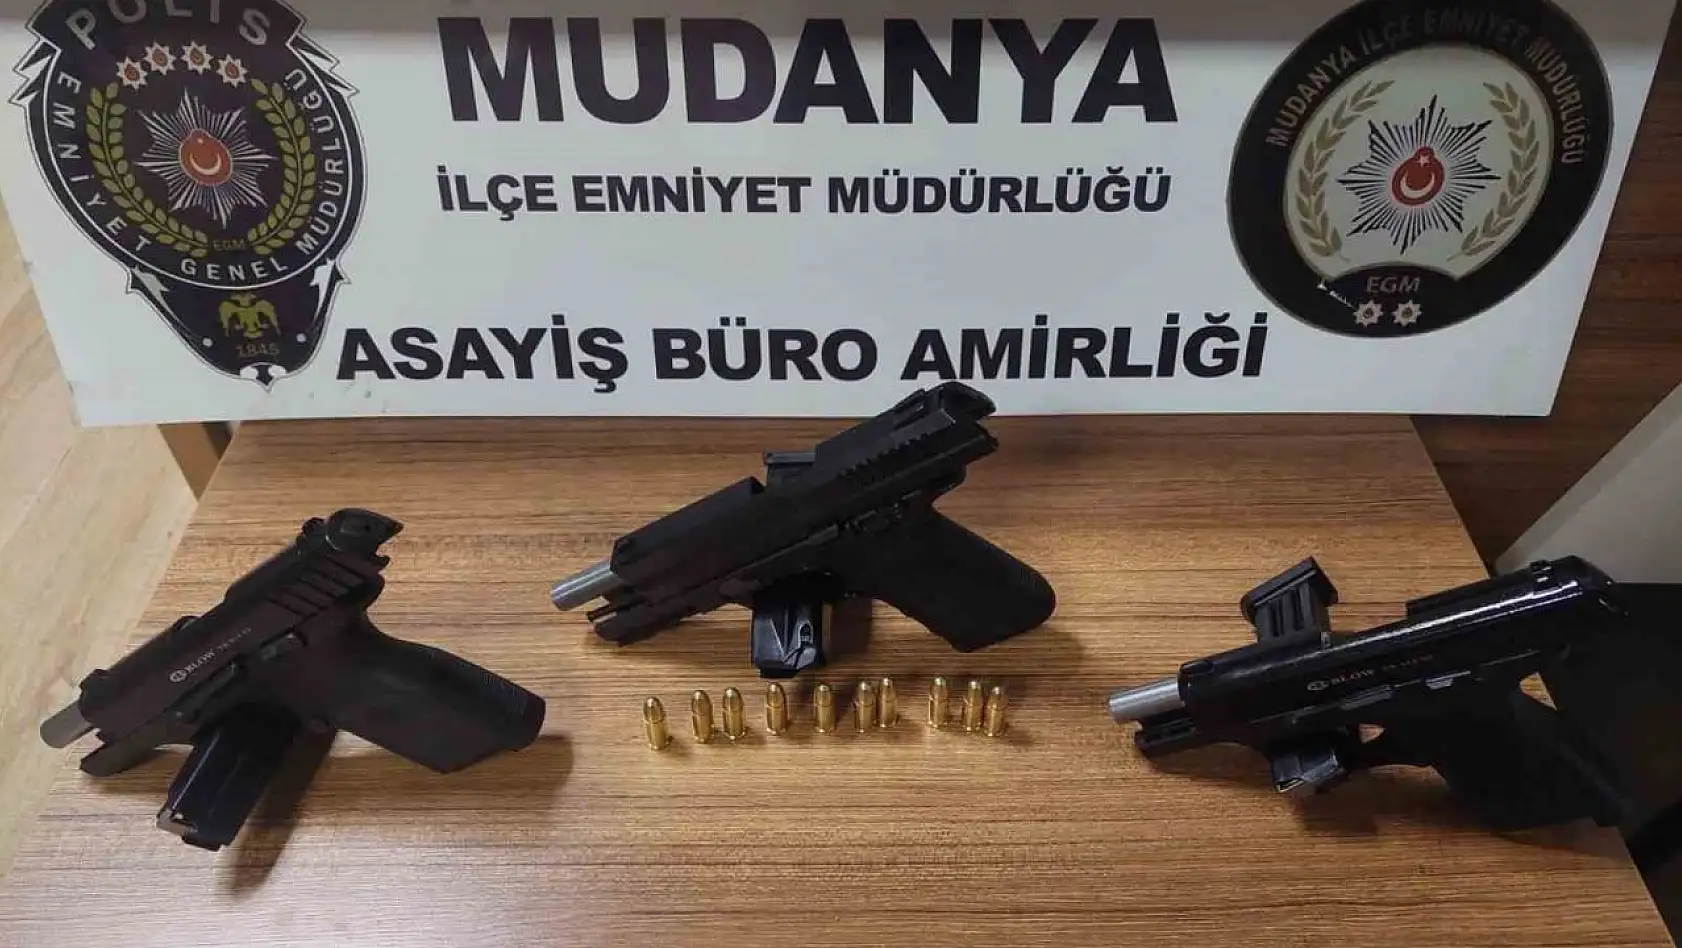 Bursa'da ruhsatsız silah bulunan 3 kişi hakkında tahkikat başlatıldı